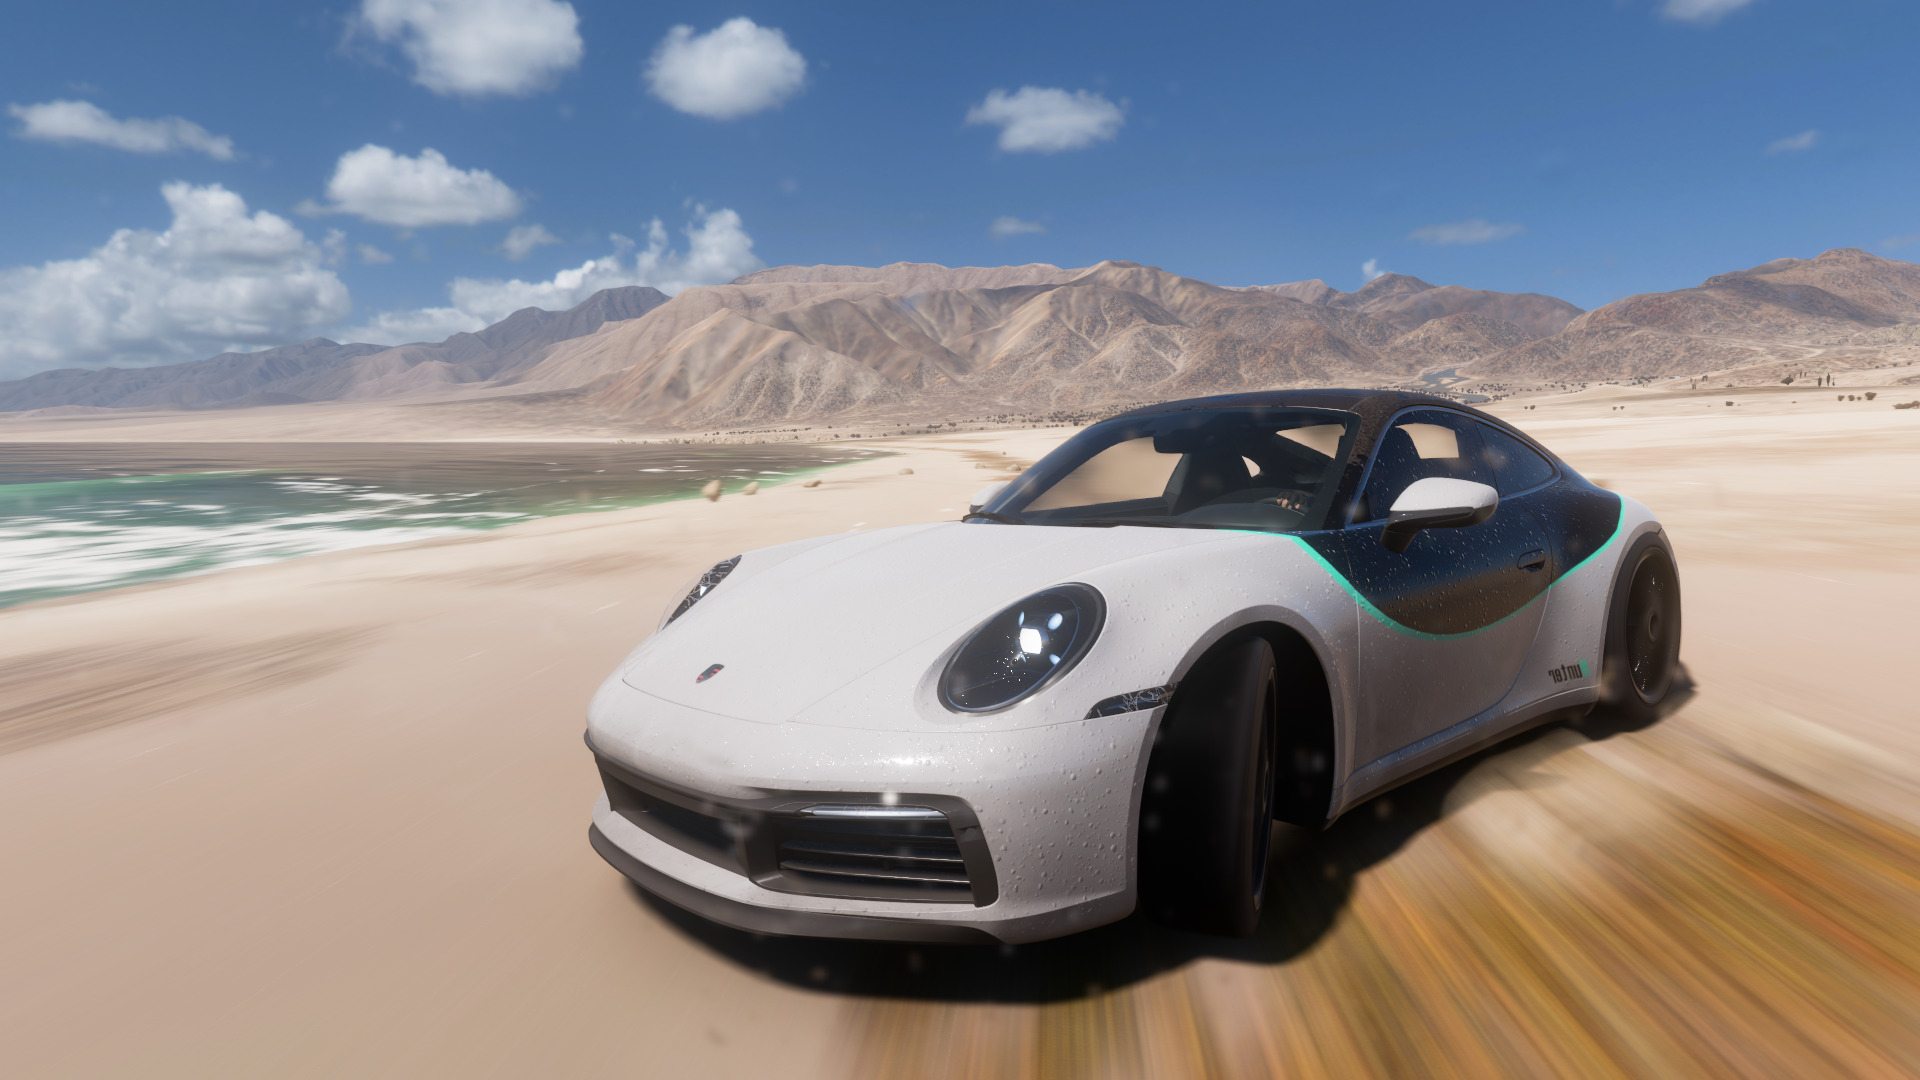 General 1920x1080 Forza Horizon 5 Porsche video games Mexico car